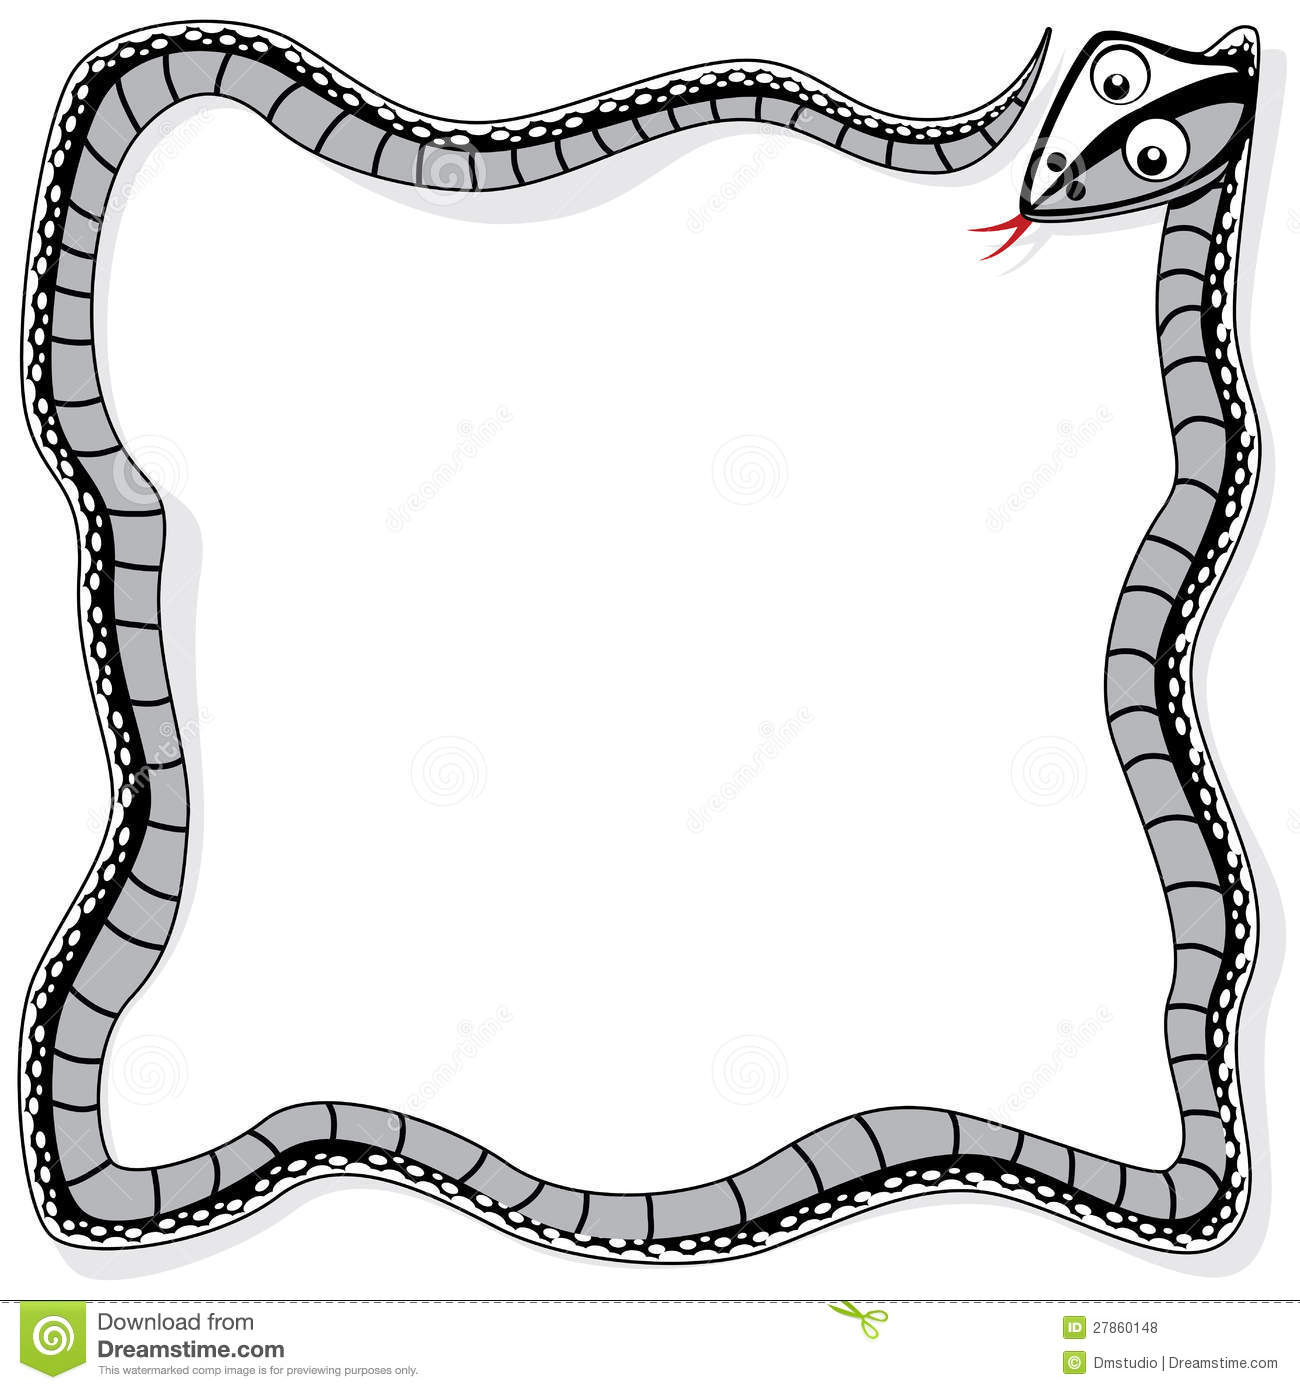 Vector Snake As A Border Royalty Free Stock Photos   Image  27860148